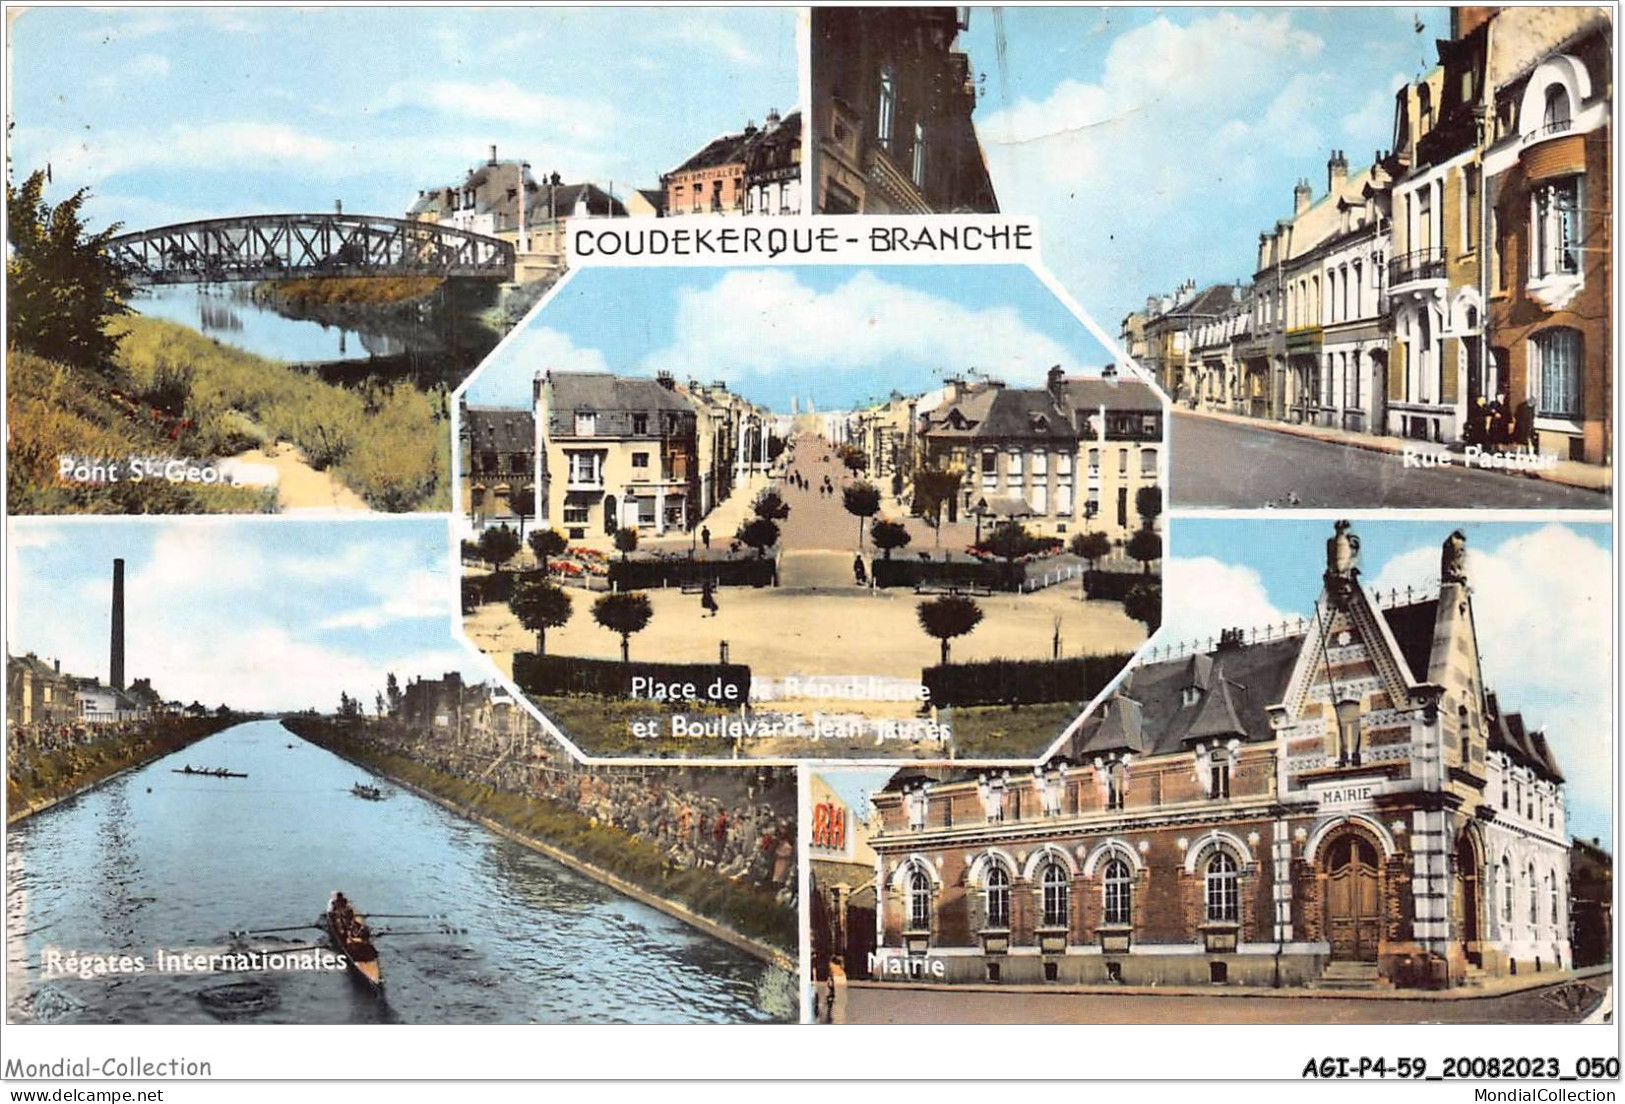 AGIP4-59-0282 - COUDEKERQUE-BRANCHE - Place De La République, Pont St-George, Mairie  - Coudekerque Branche